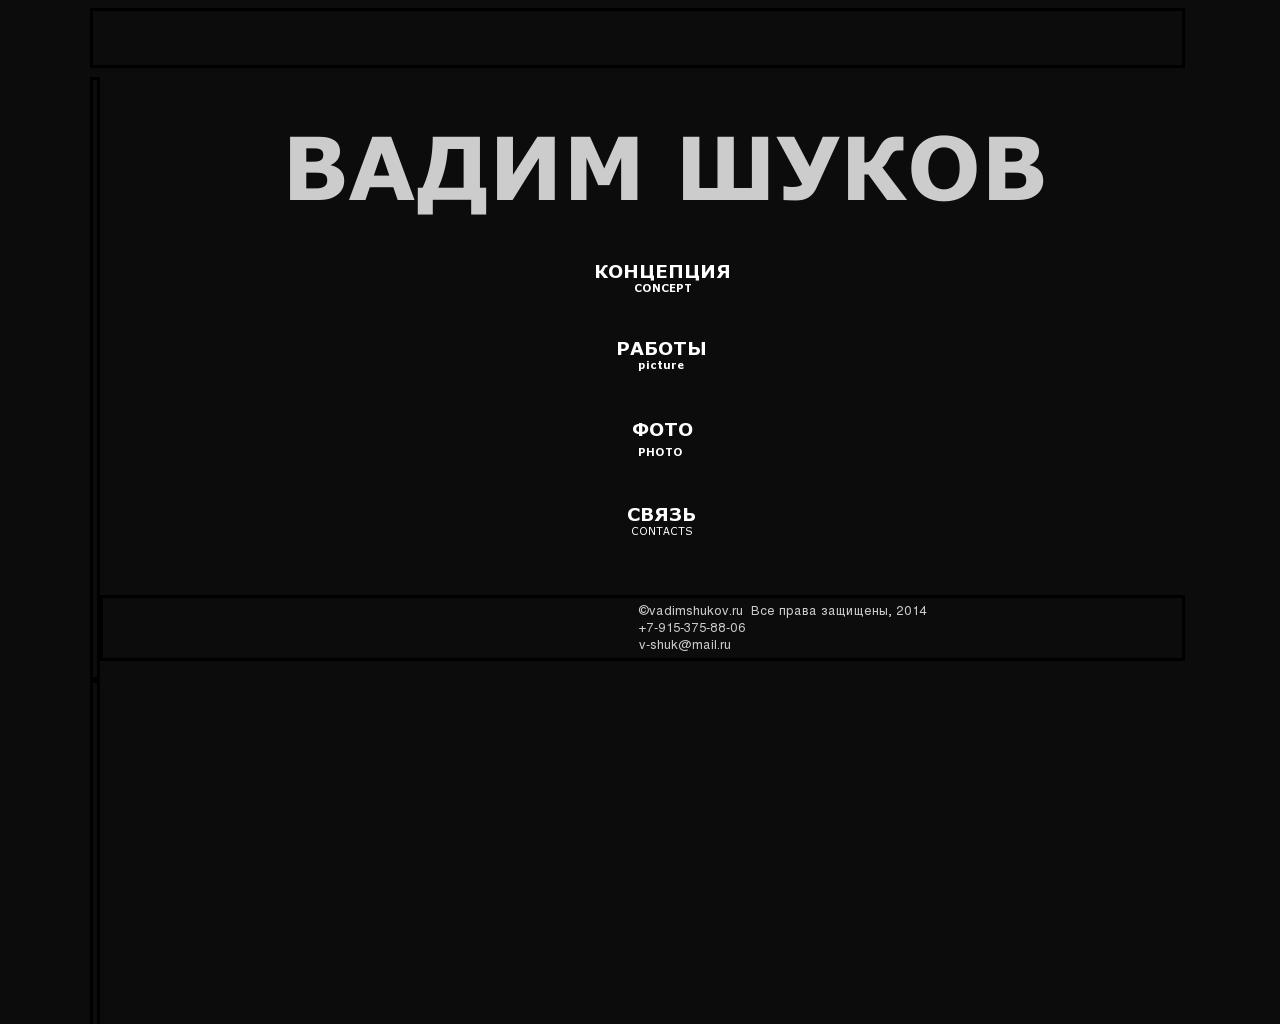 Изображение сайта shukov.ru в разрешении 1280x1024